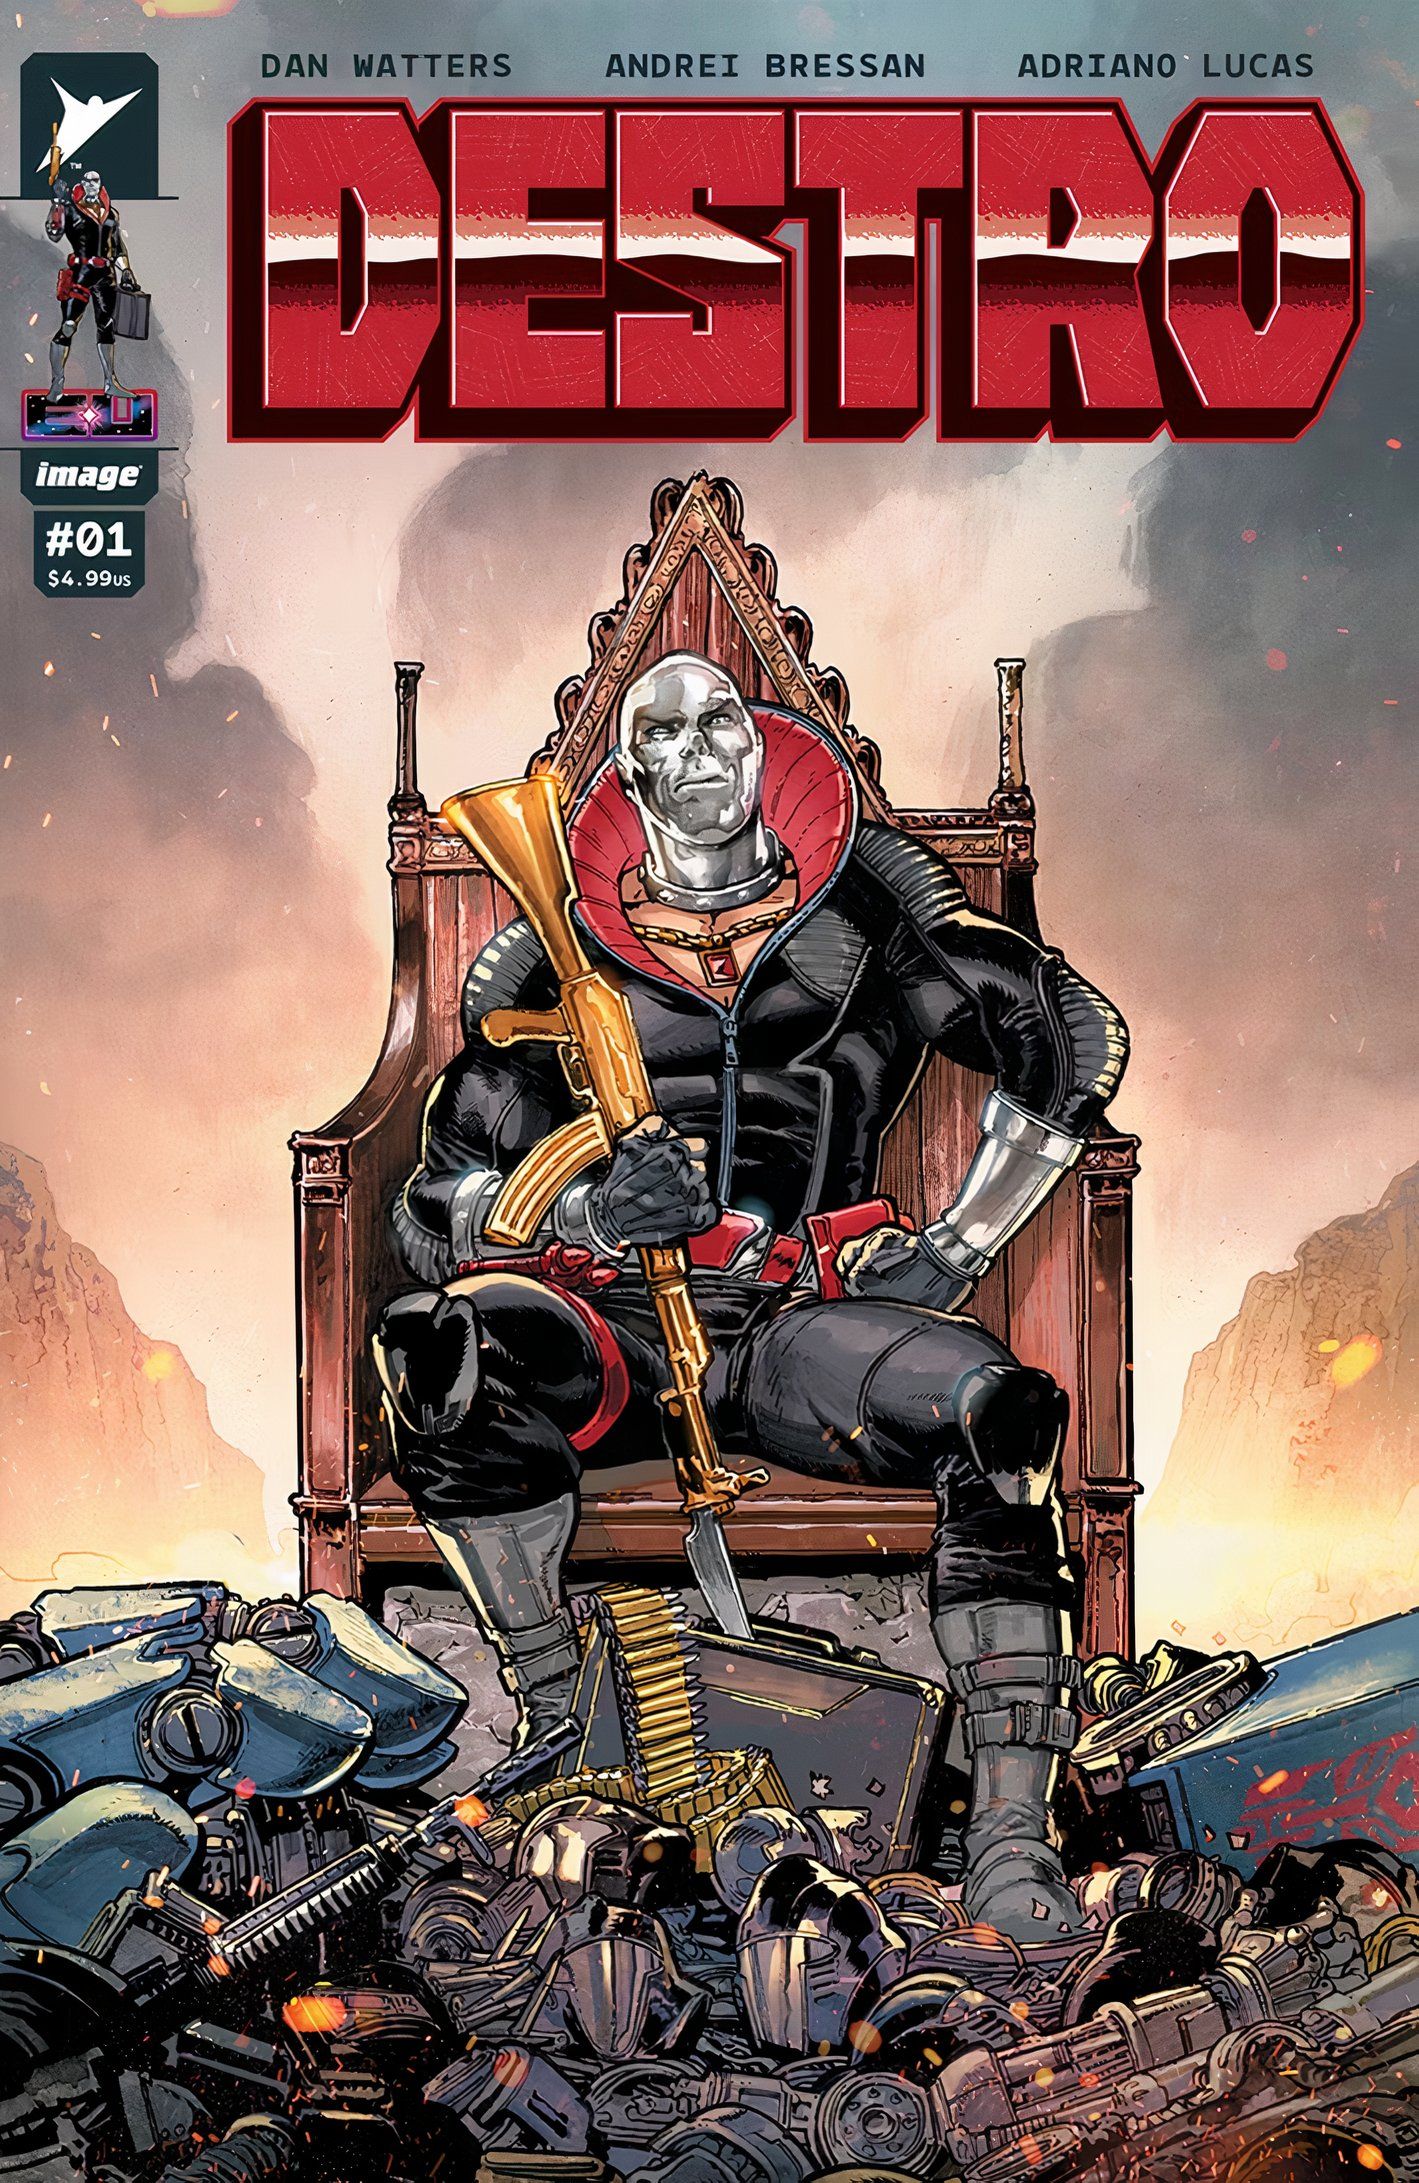 Capa de Destro #1, Destro sentado no trono de Darklonia com destroços espalhados a seus pés.